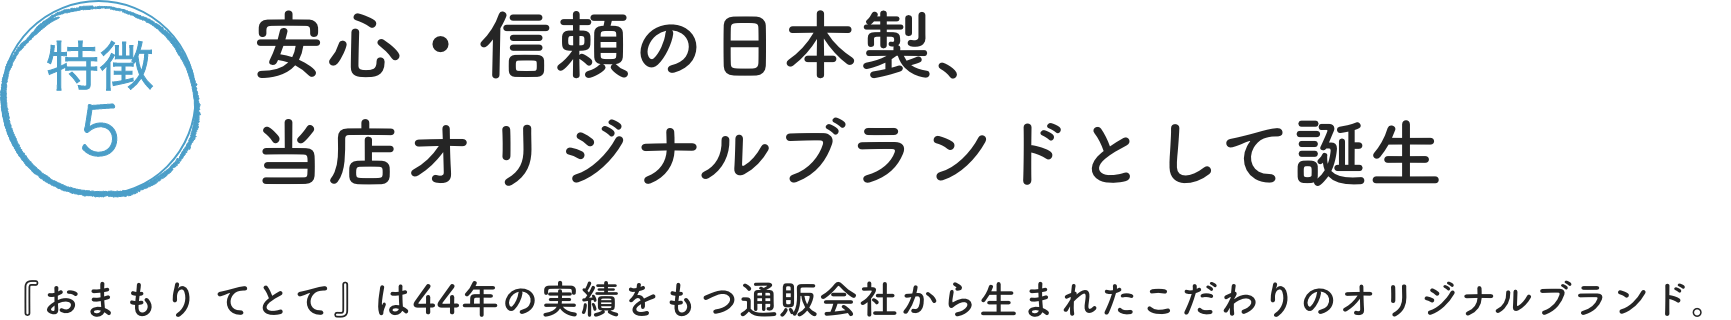 特徴5 安心・信頼の日本製、当店オリジナルブランドとして誕生